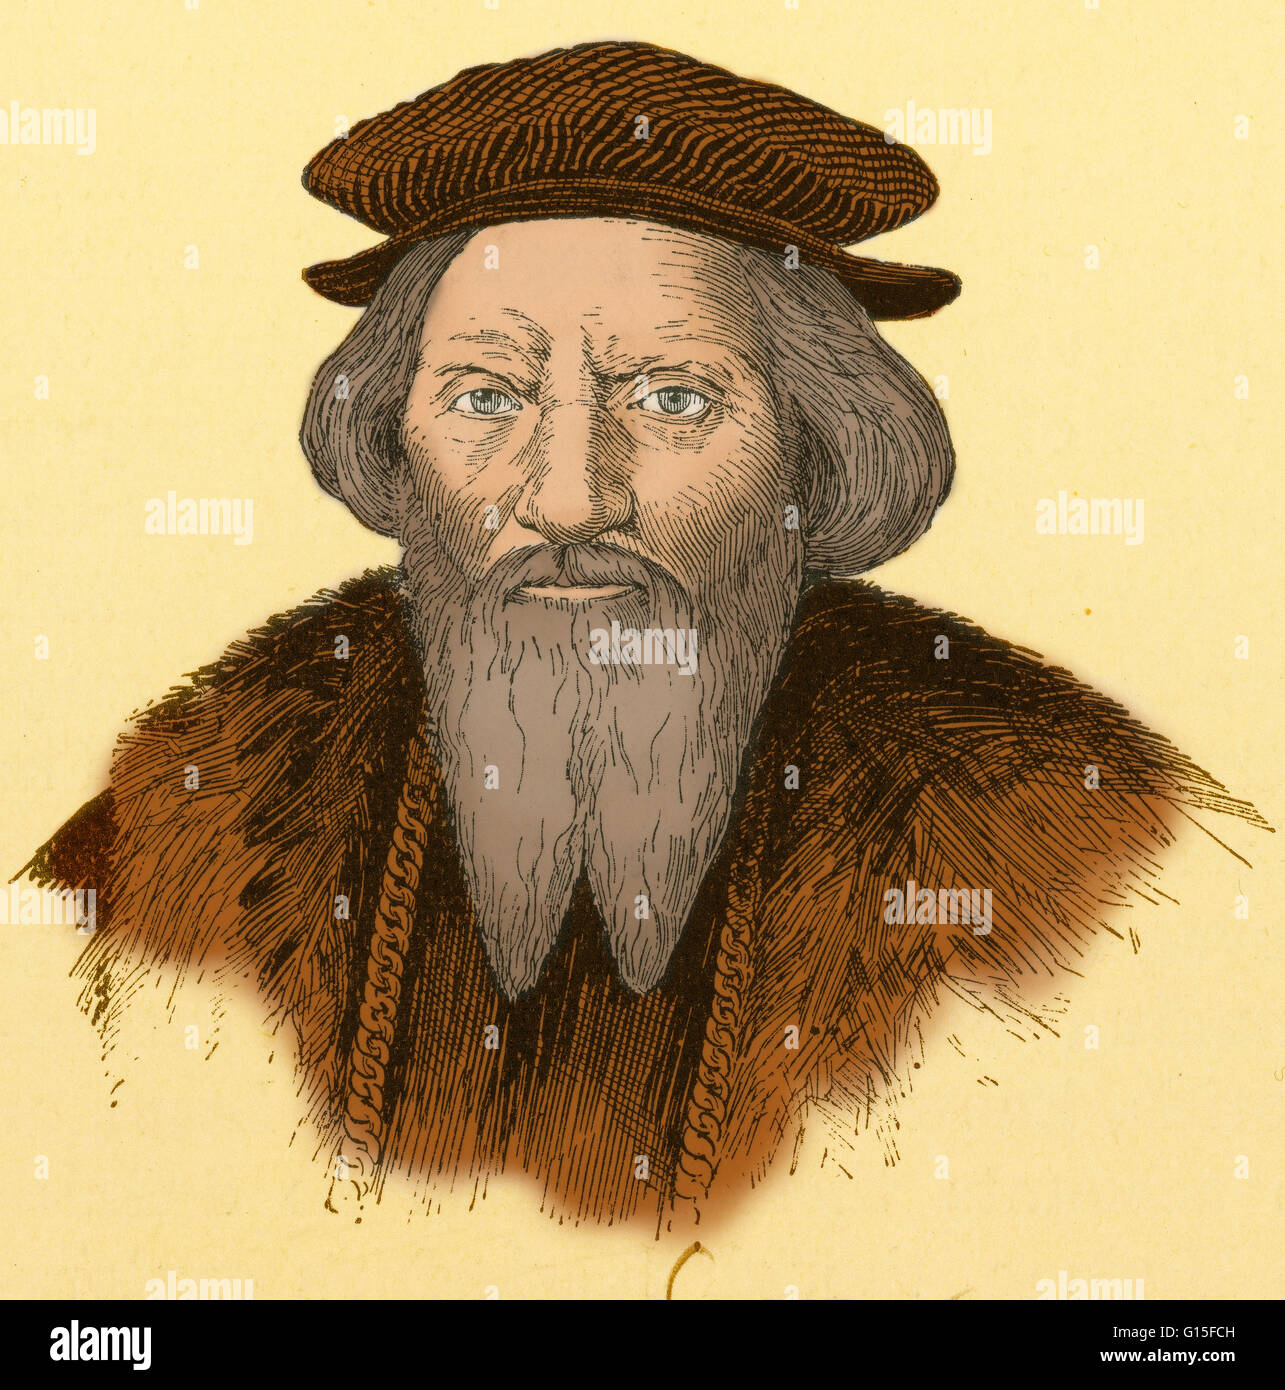 Sébastien Cabot (1474-1557) était un explorateur, cartographe et navigateur et fils de l'explorateur Jean Cabot. Il a travaillé en tant que cartographe pour le roi d'Angleterre Henri VIII et un capitaine pour le roi d'Espagne Ferdinand V, exploré pour le roi d'Angleterre Henri VII. Ca Banque D'Images